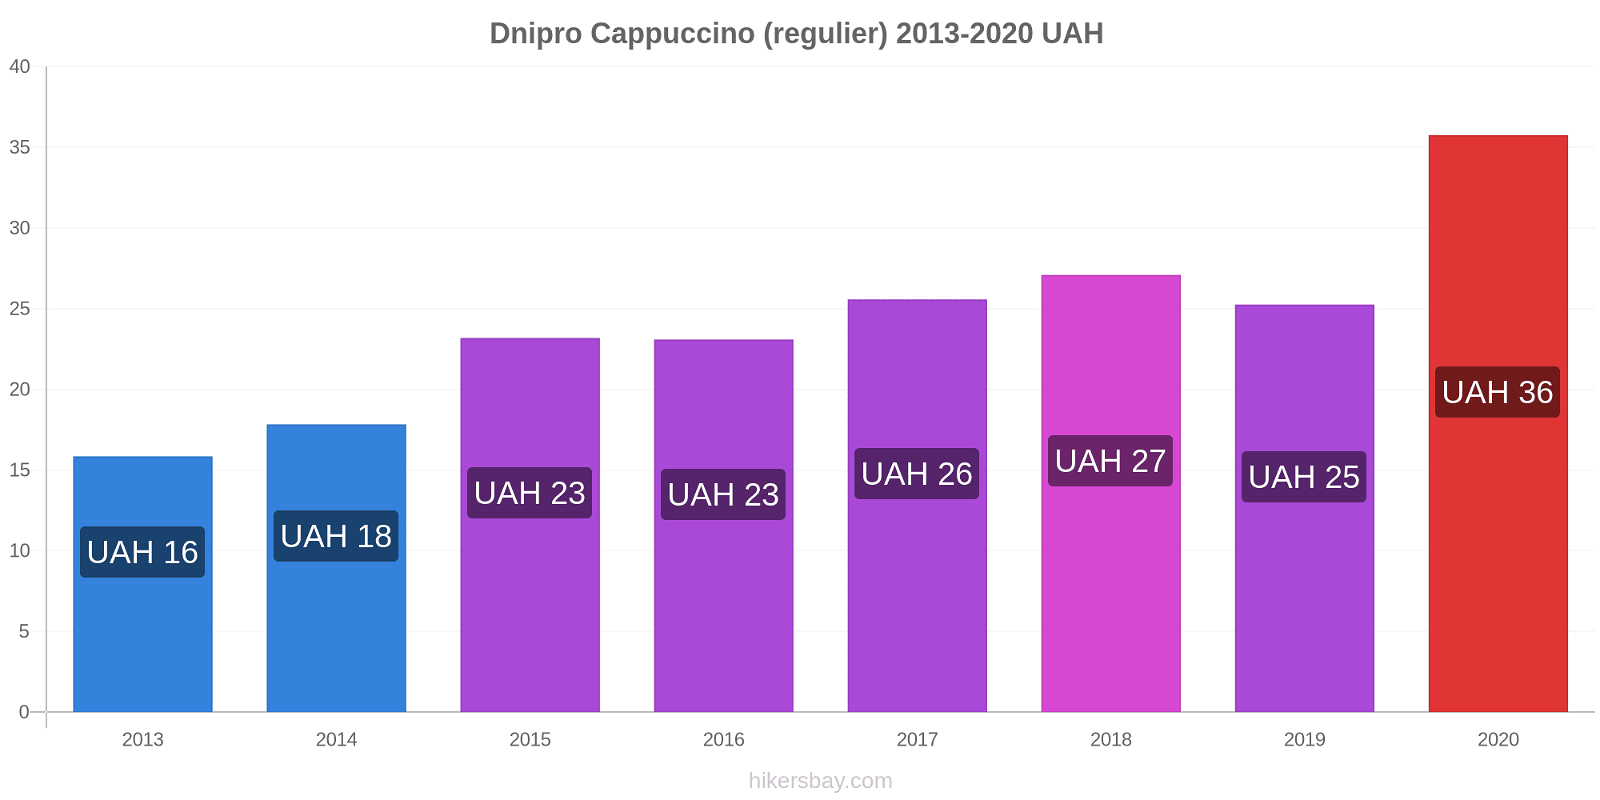 Dnipro prijswijzigingen Cappuccino (regelmatige) hikersbay.com